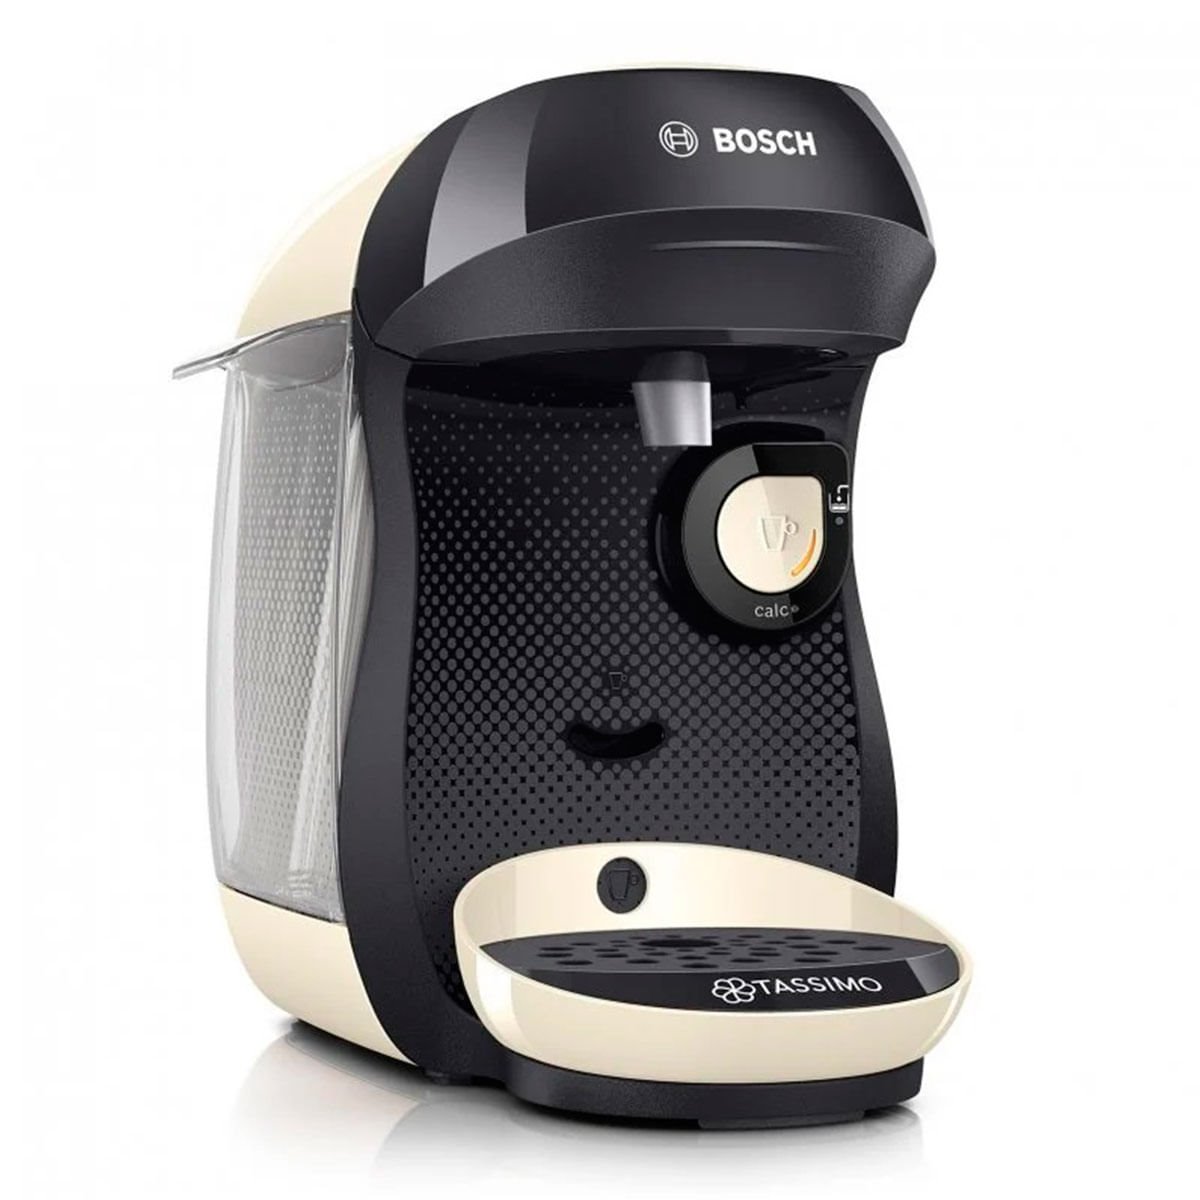 Máquina de Café Tassimo marca Bosch modelo T20 con lectura de código de  barra 